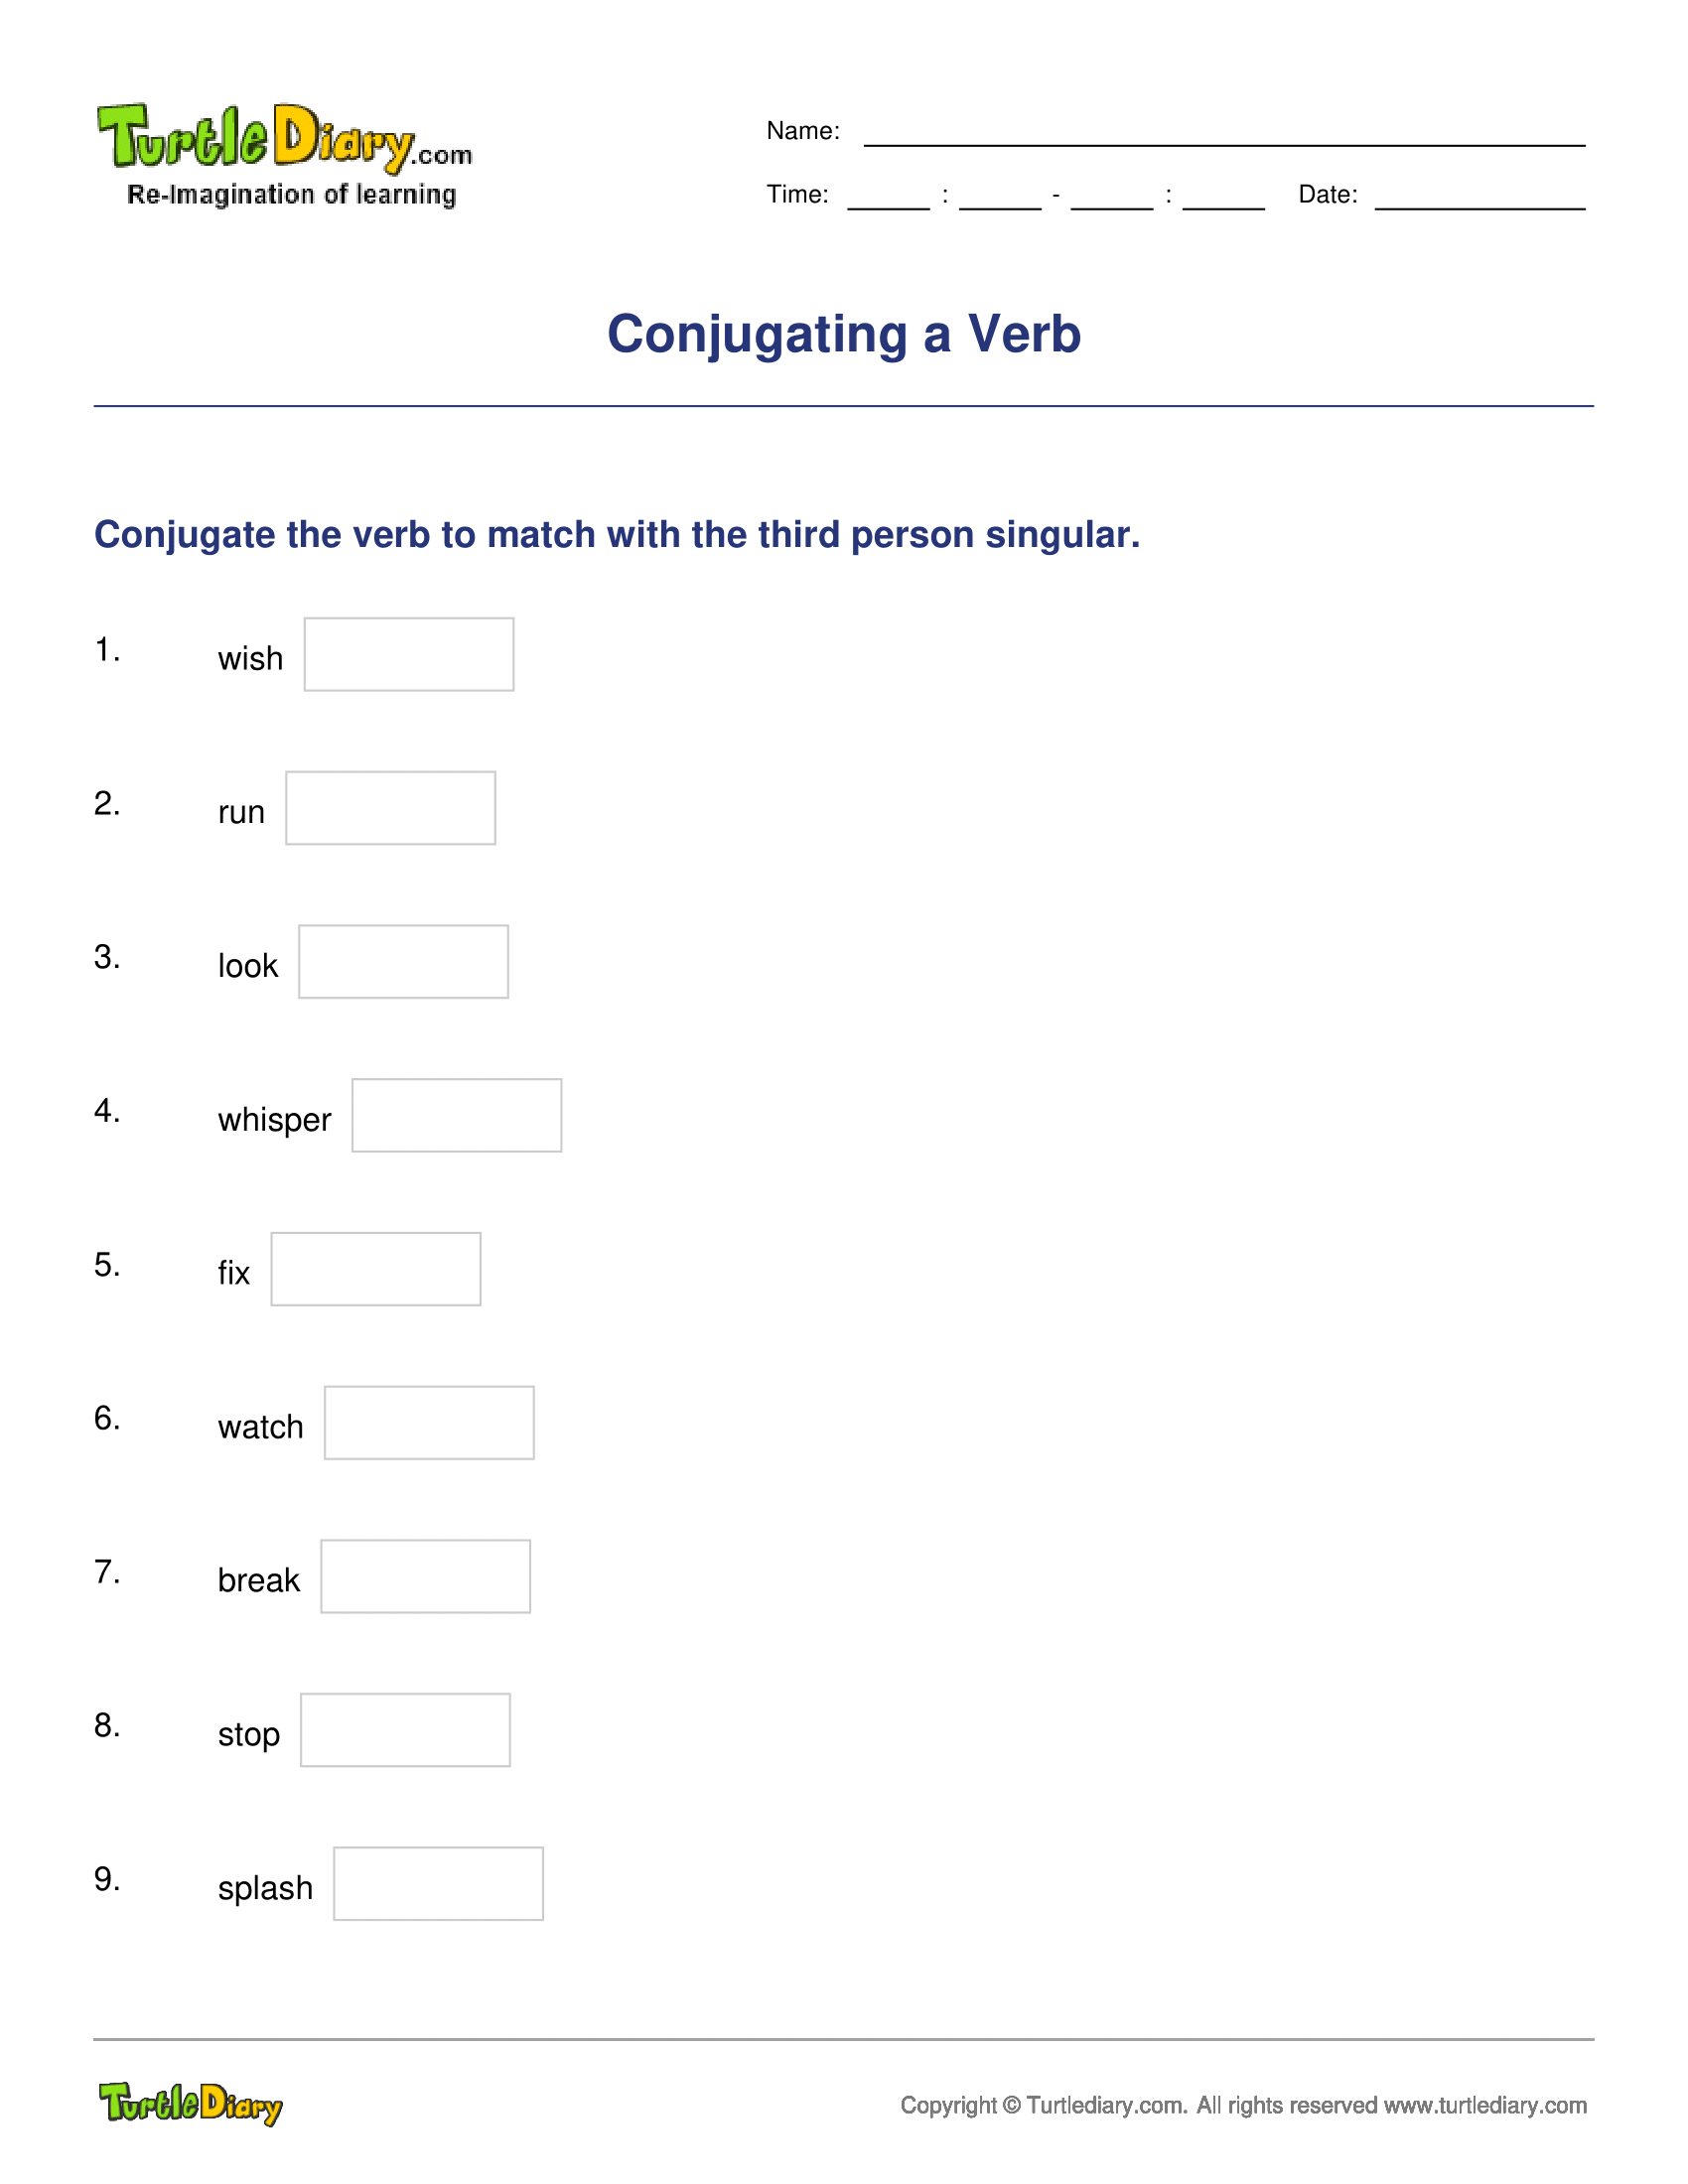 Conjugating a Verb